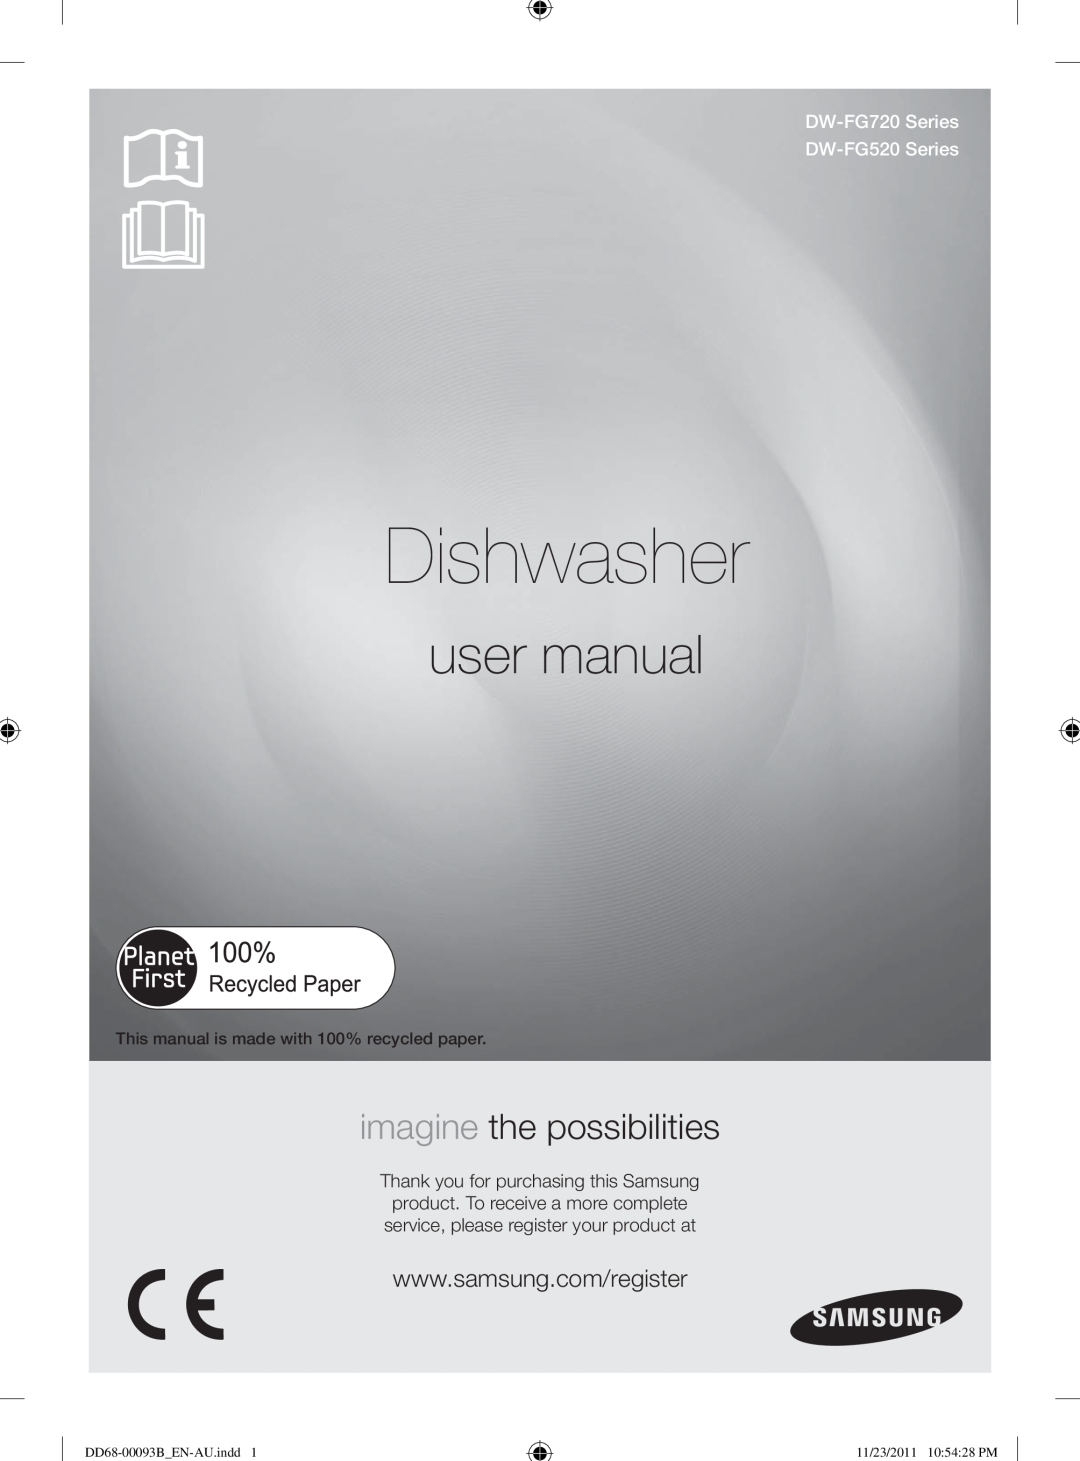 Samsung user manual Dishwasher, imagine the possibilities, DW-FG720Series DW-FG520Series, DD68-00093B EN-AU.indd1 